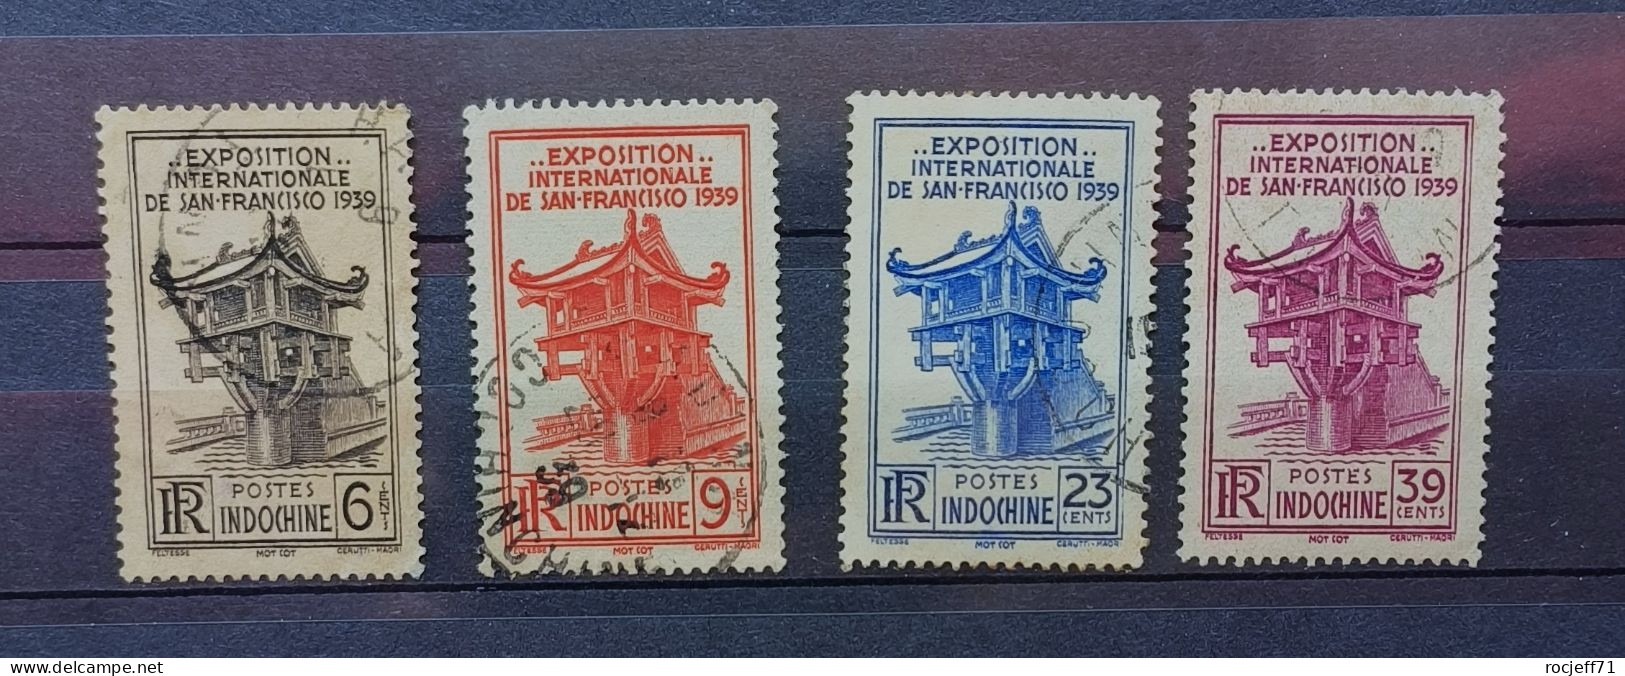 04 - 24 - Indochine - N° 205 à 208 - Expo De San Françisco 1939 - Oblitérés